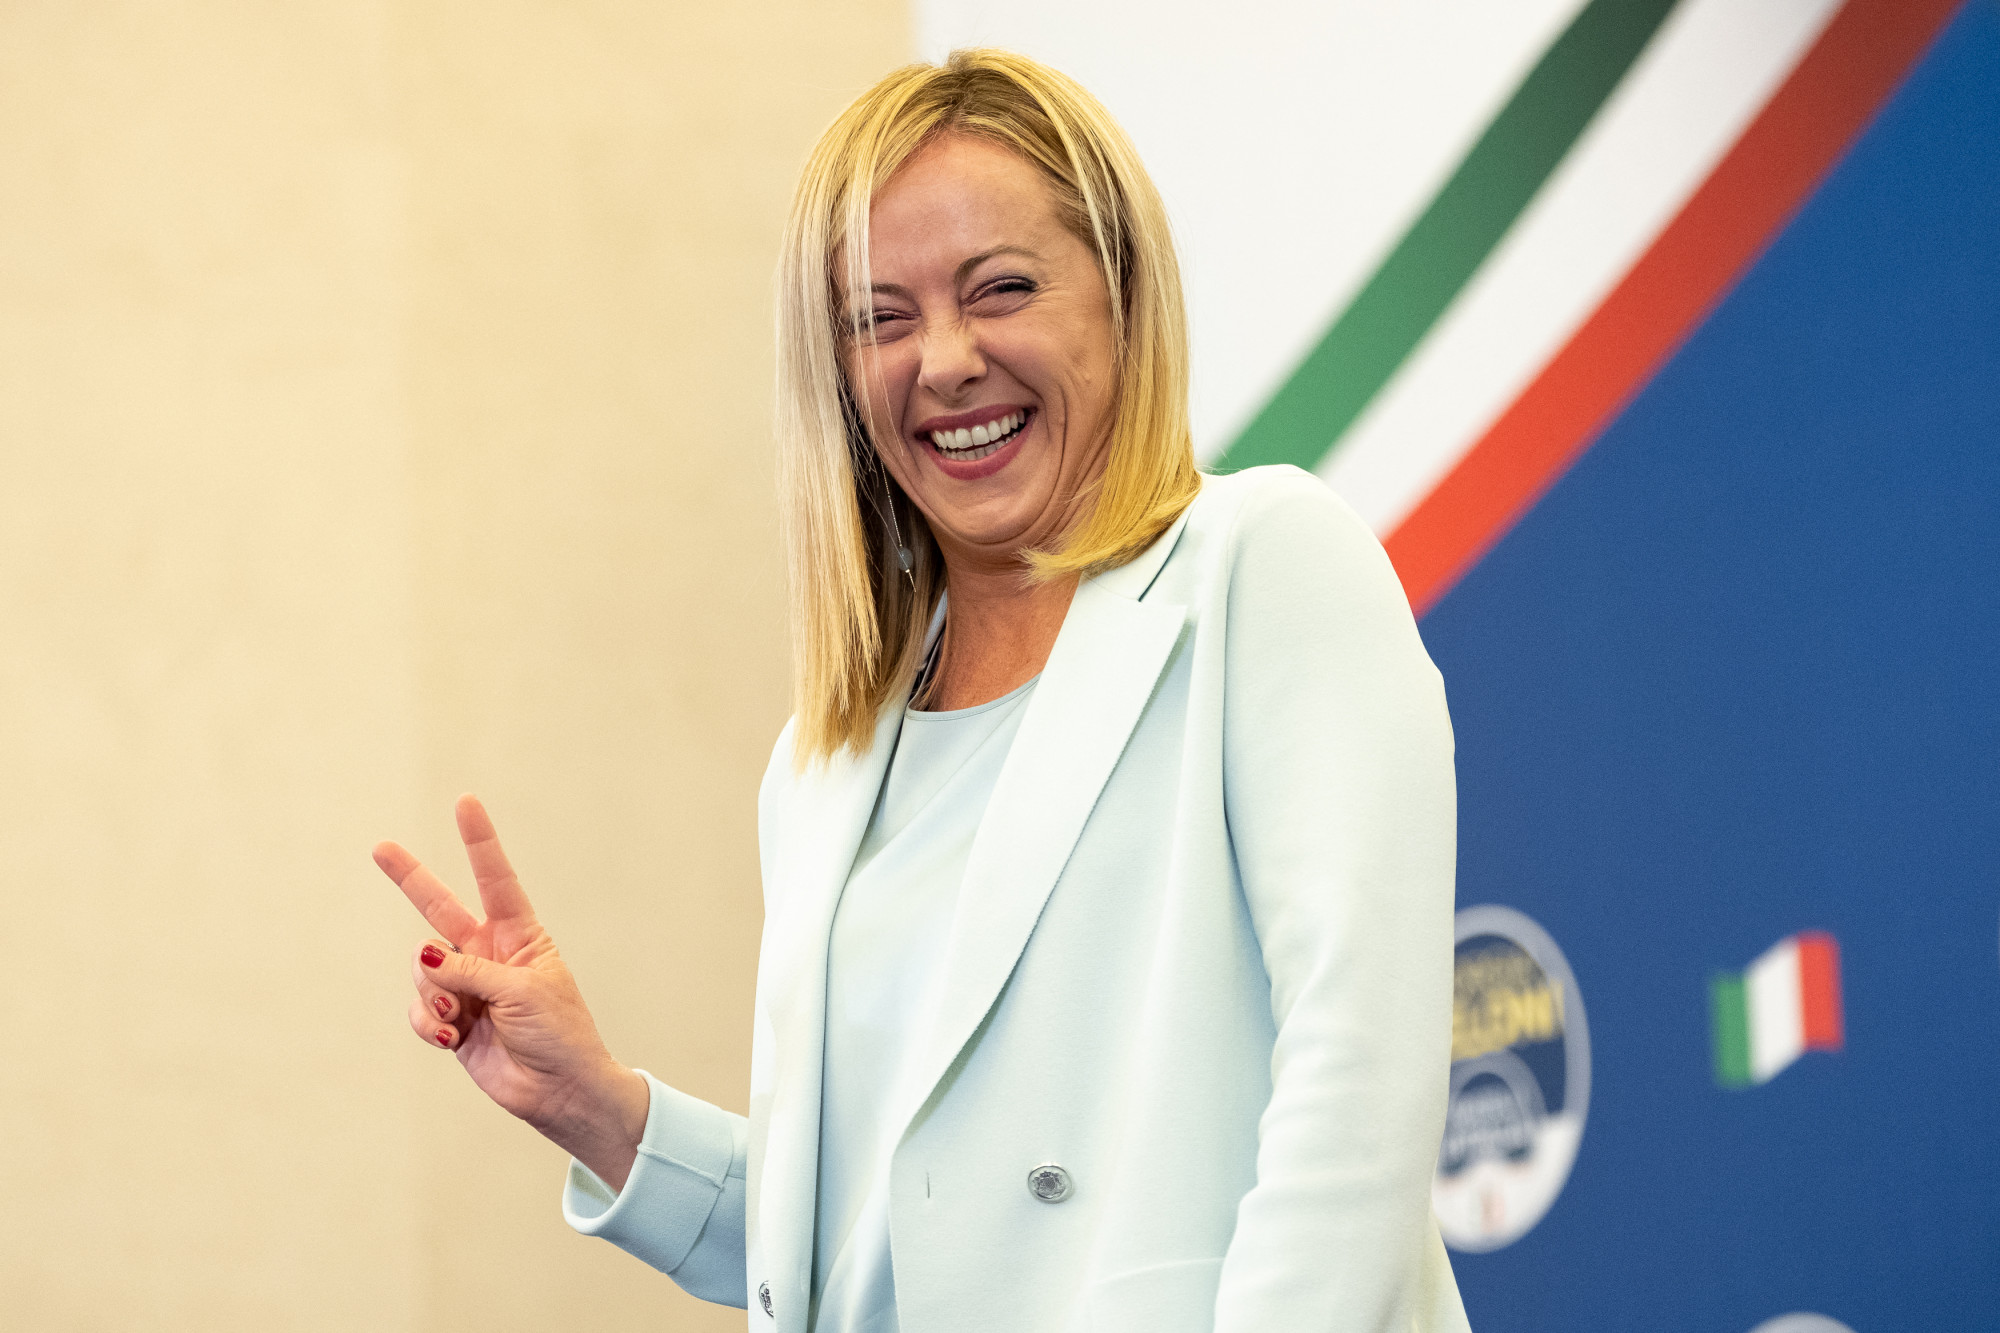 Giorgia Meloni szeptember 26-án örül választási győzelmének.